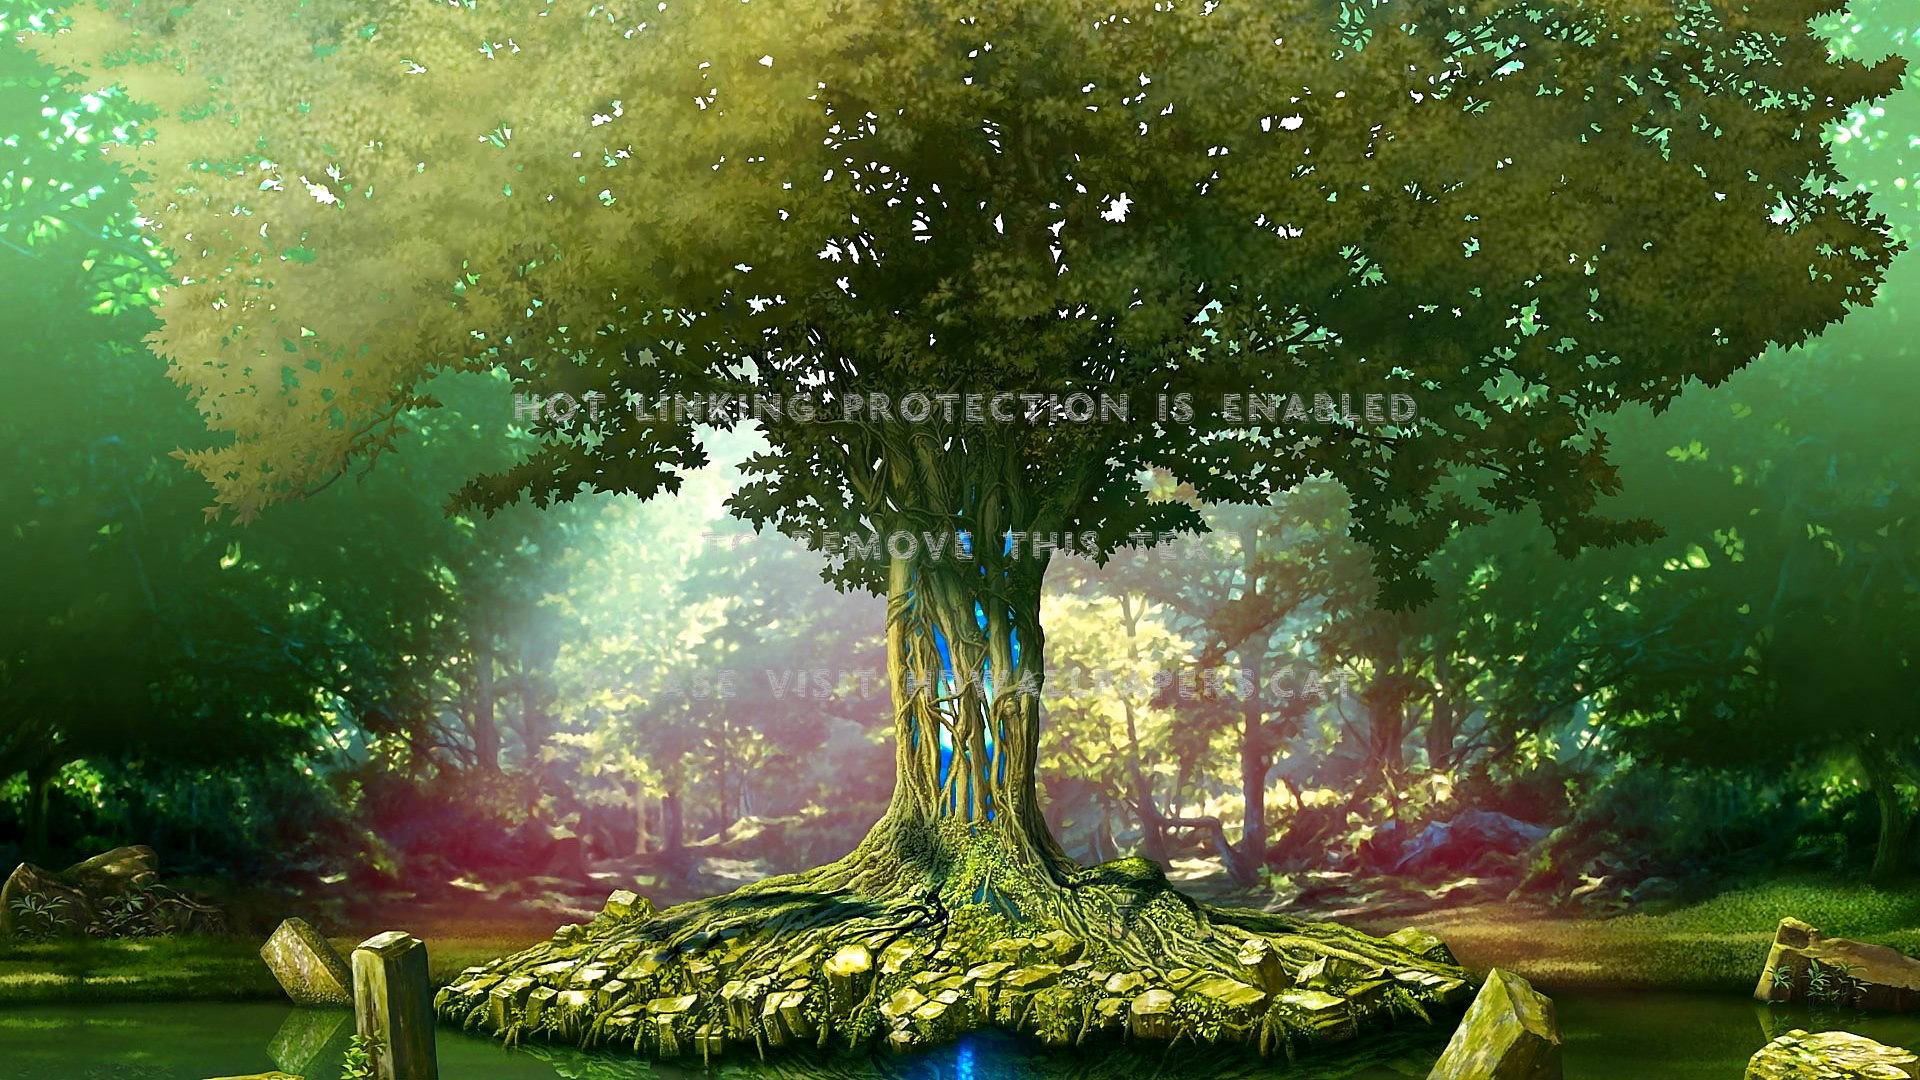 Live Tree Beautiful Fairytale Forest - Secret Of Mana Wallpaper Hd - HD Wallpaper 